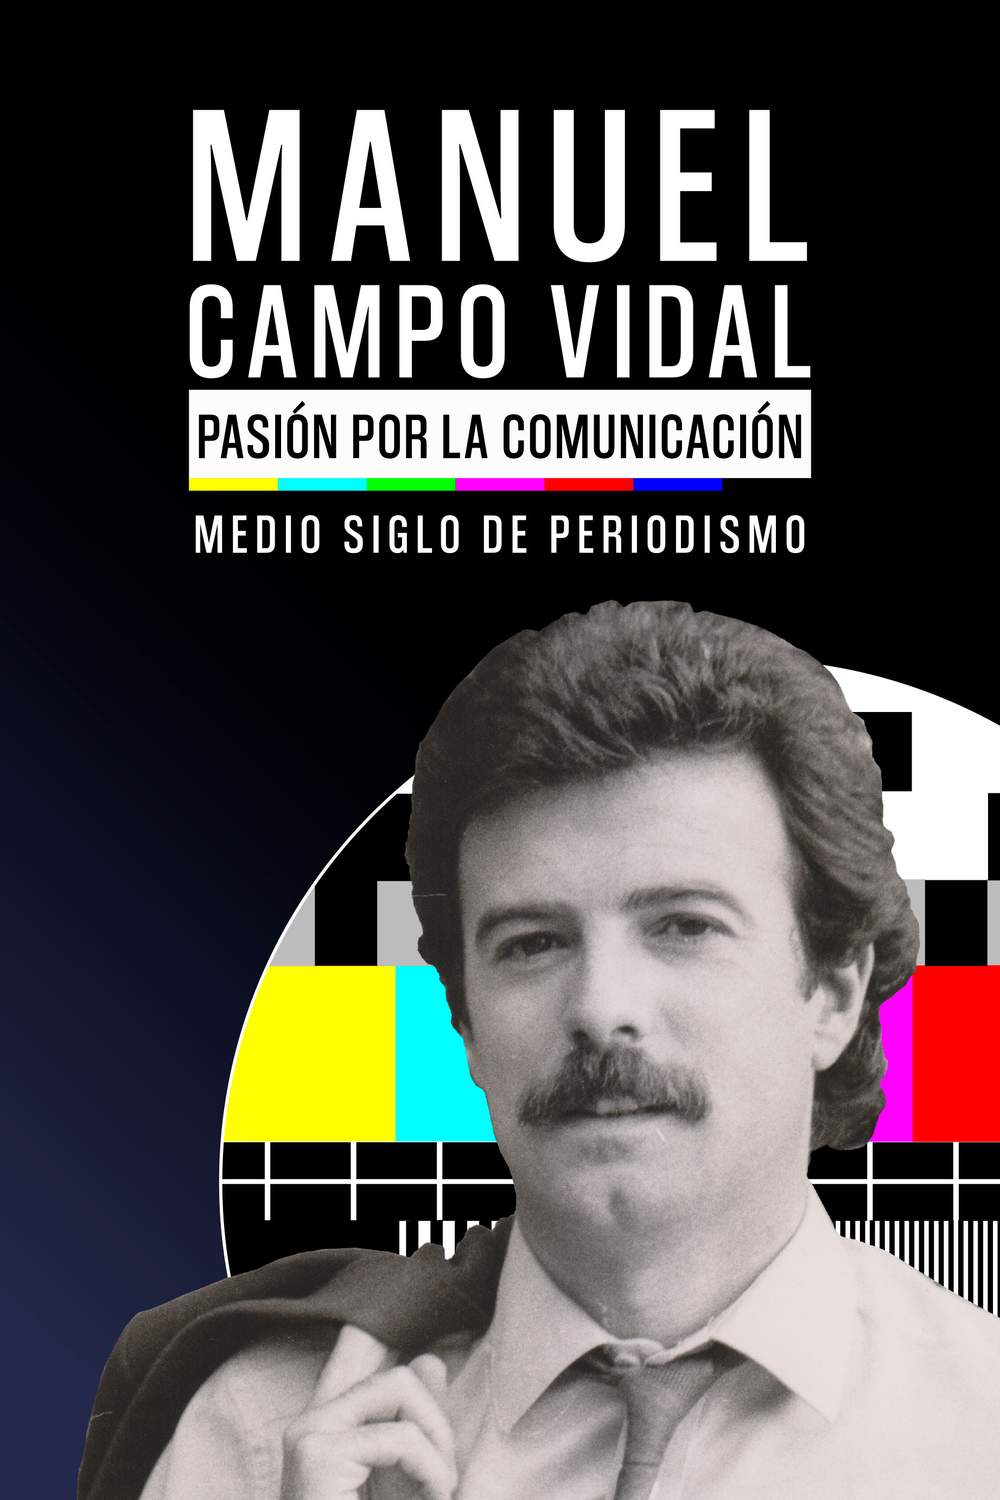 "Manuel Campo Vidal: Pasión por la comunicación", 50 años de periodismo en España junto a uno de sus grandes protagonistas